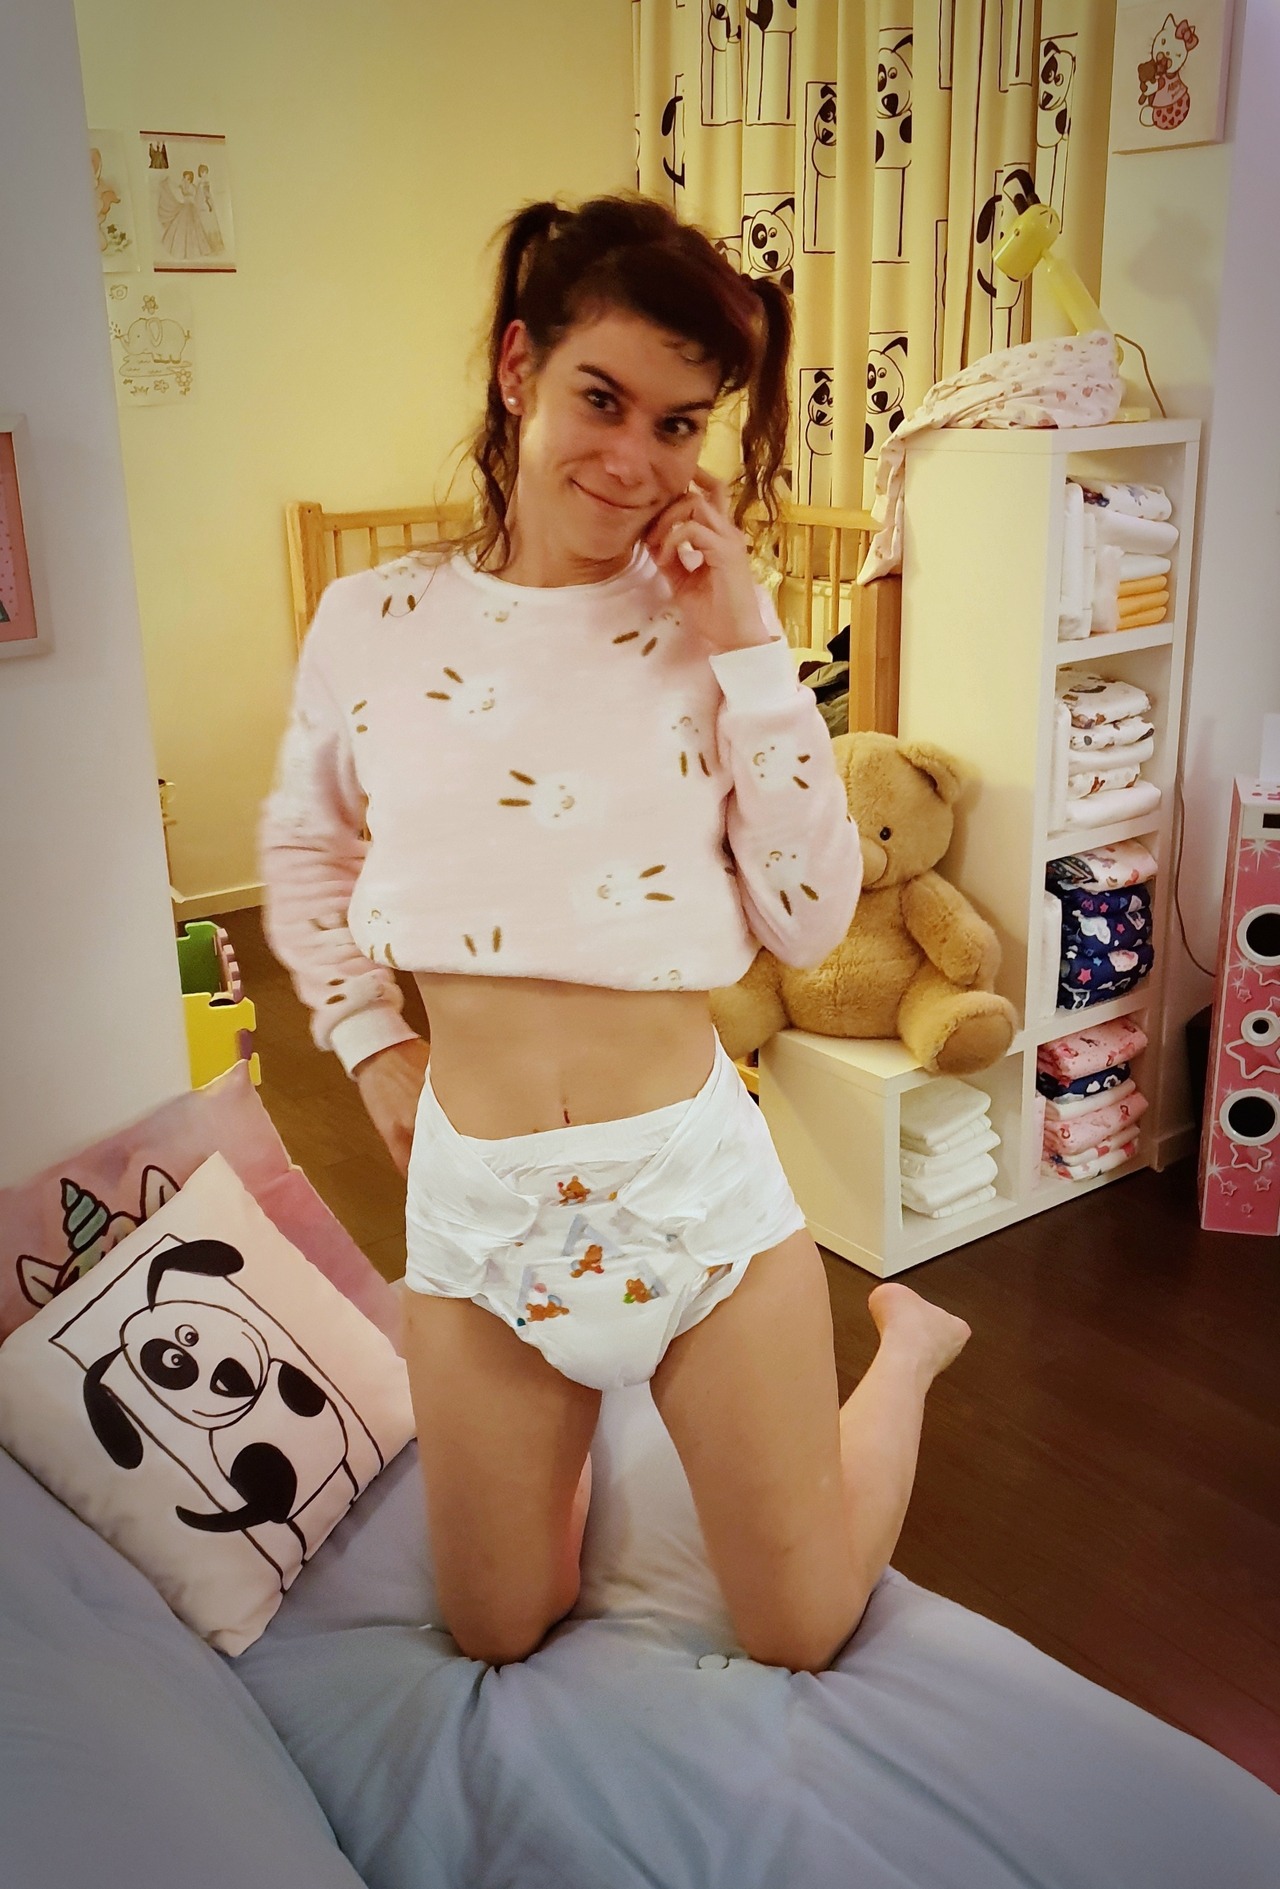 Diaper Girl Sex Porn - Teen diaper girls abhunnies - Porn pictures